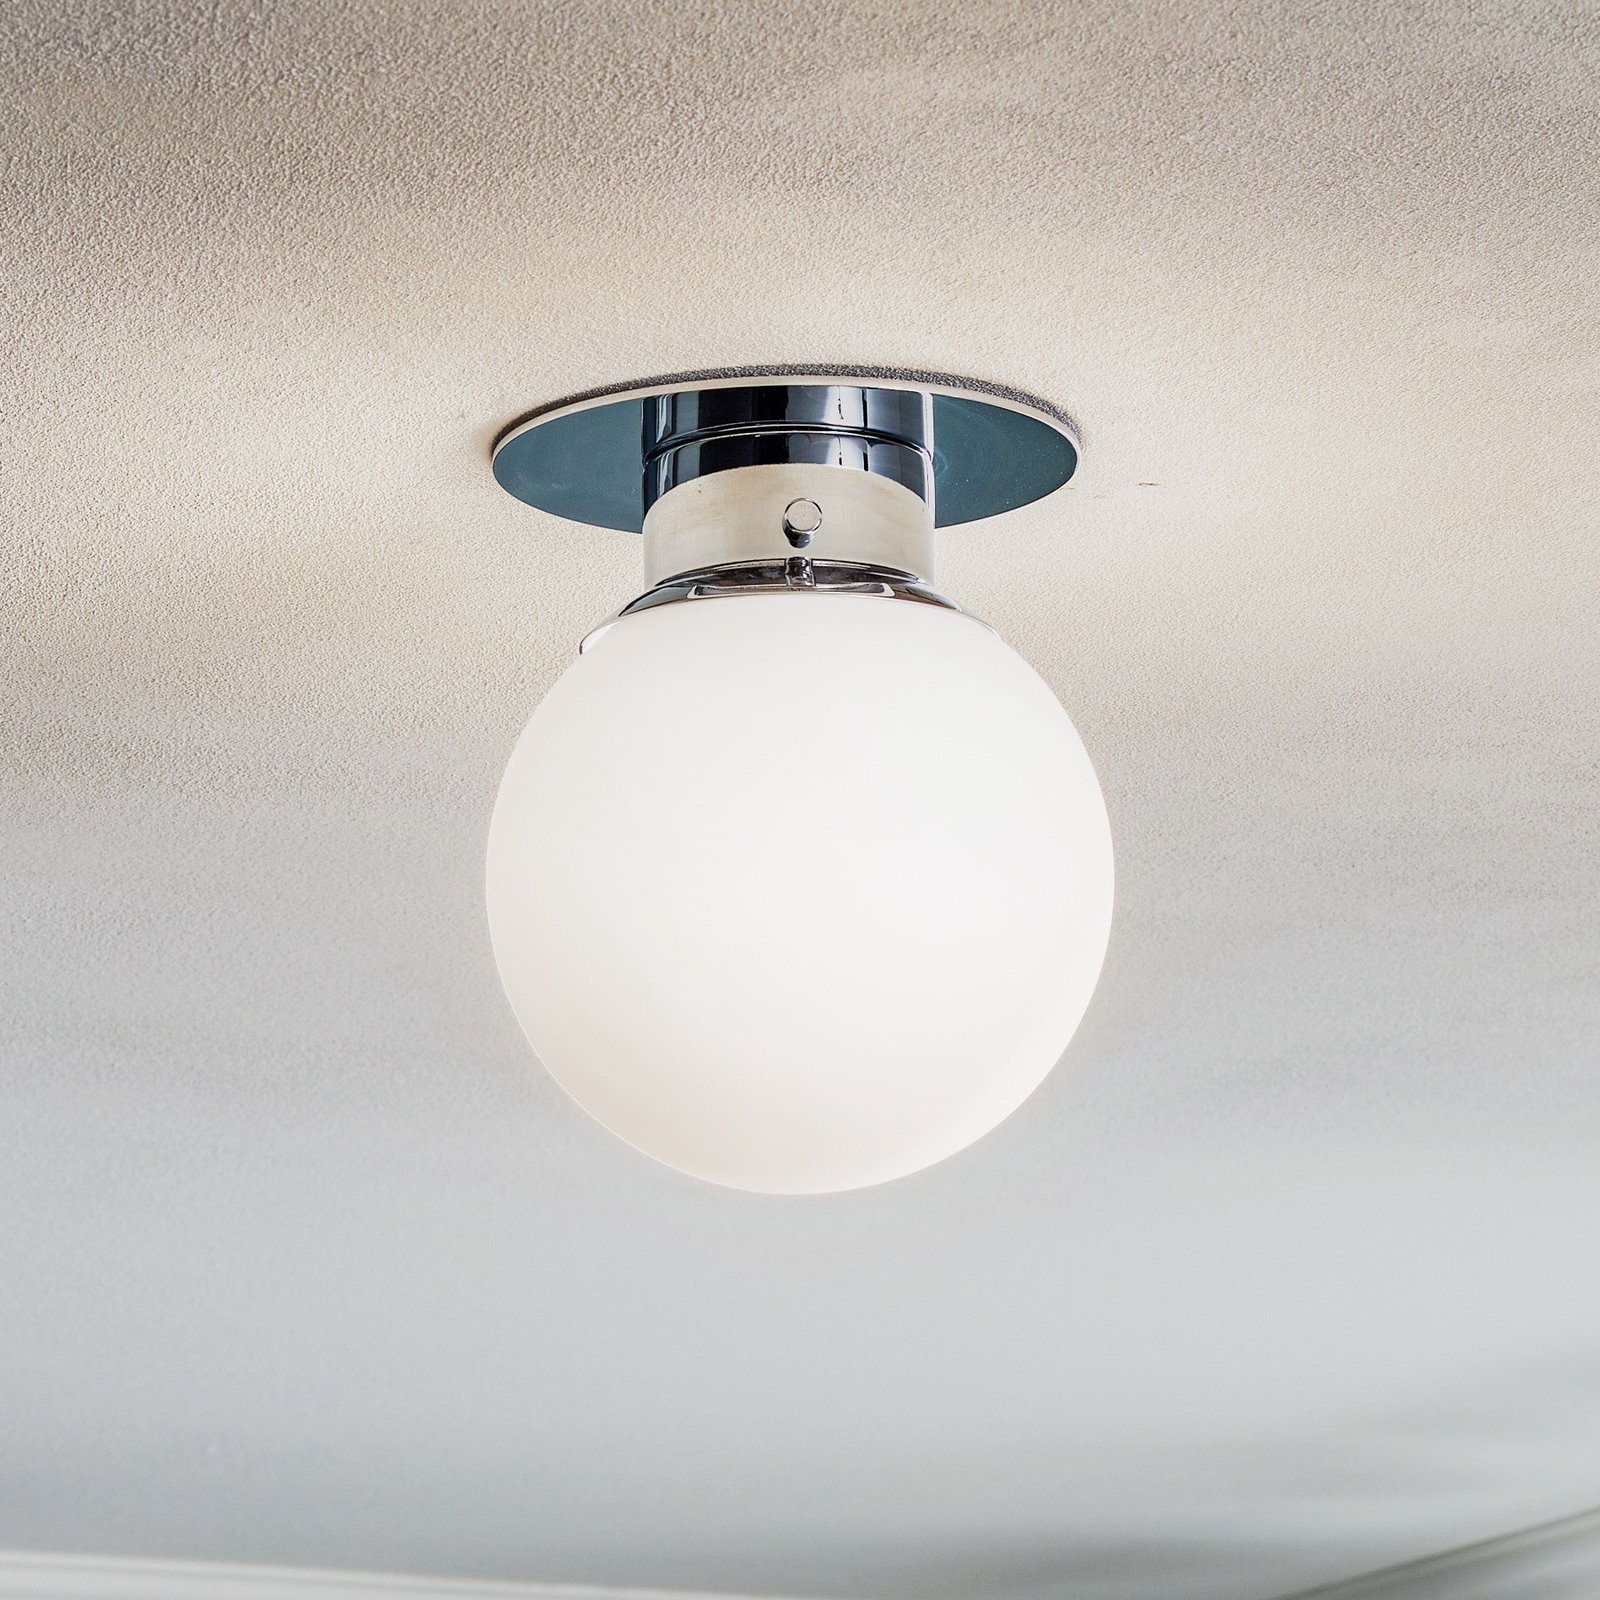 GLOBE classic spherical ceiling light, chrome